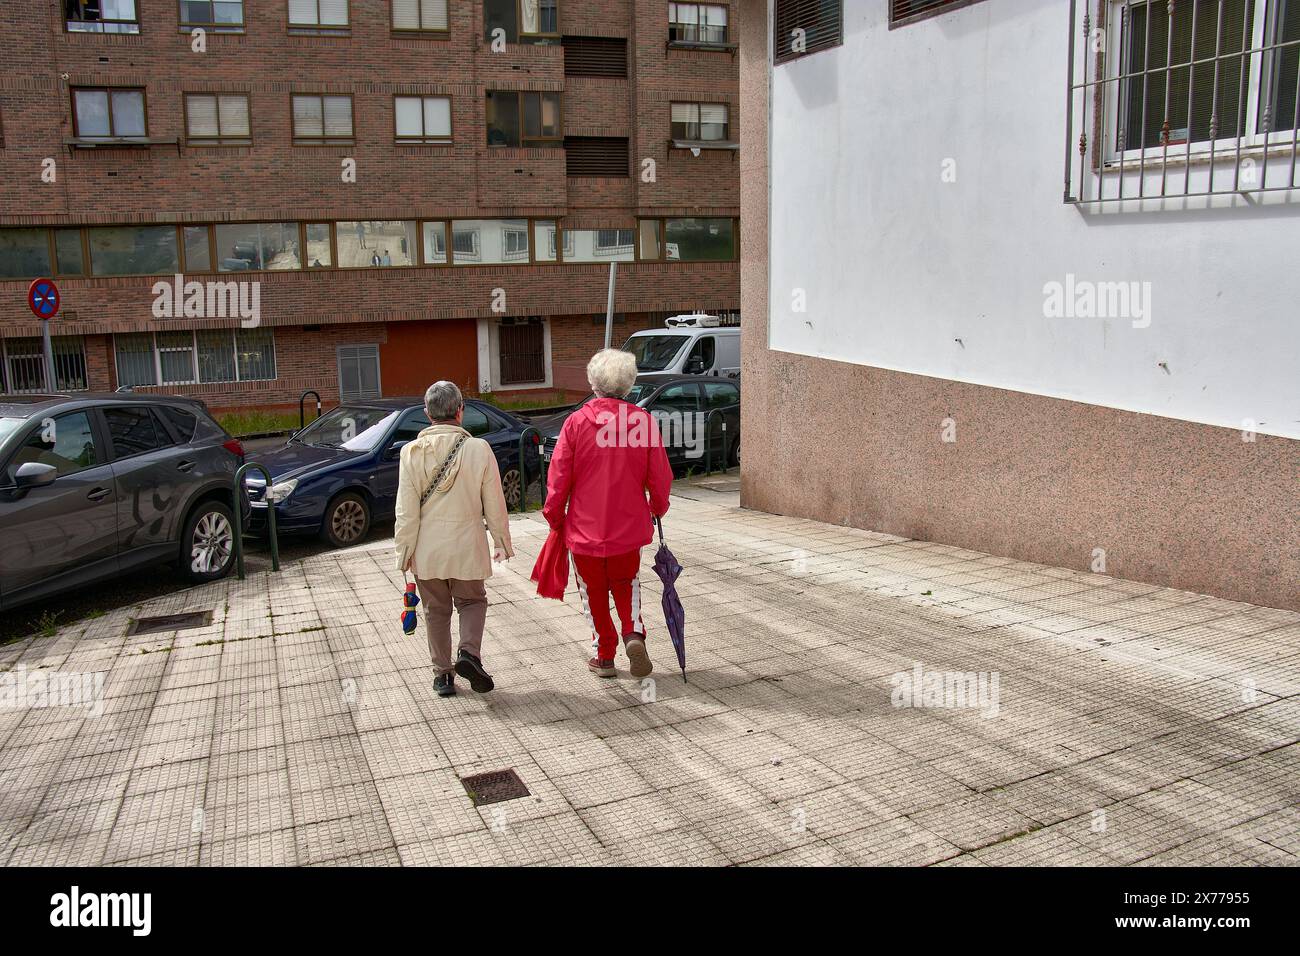 Deux femmes au dos méconnaissable marchent dans la rue en bavardant, l'une en survêtement rouge et l'autre en blanc ; elles ont toutes les deux les cheveux gris Banque D'Images